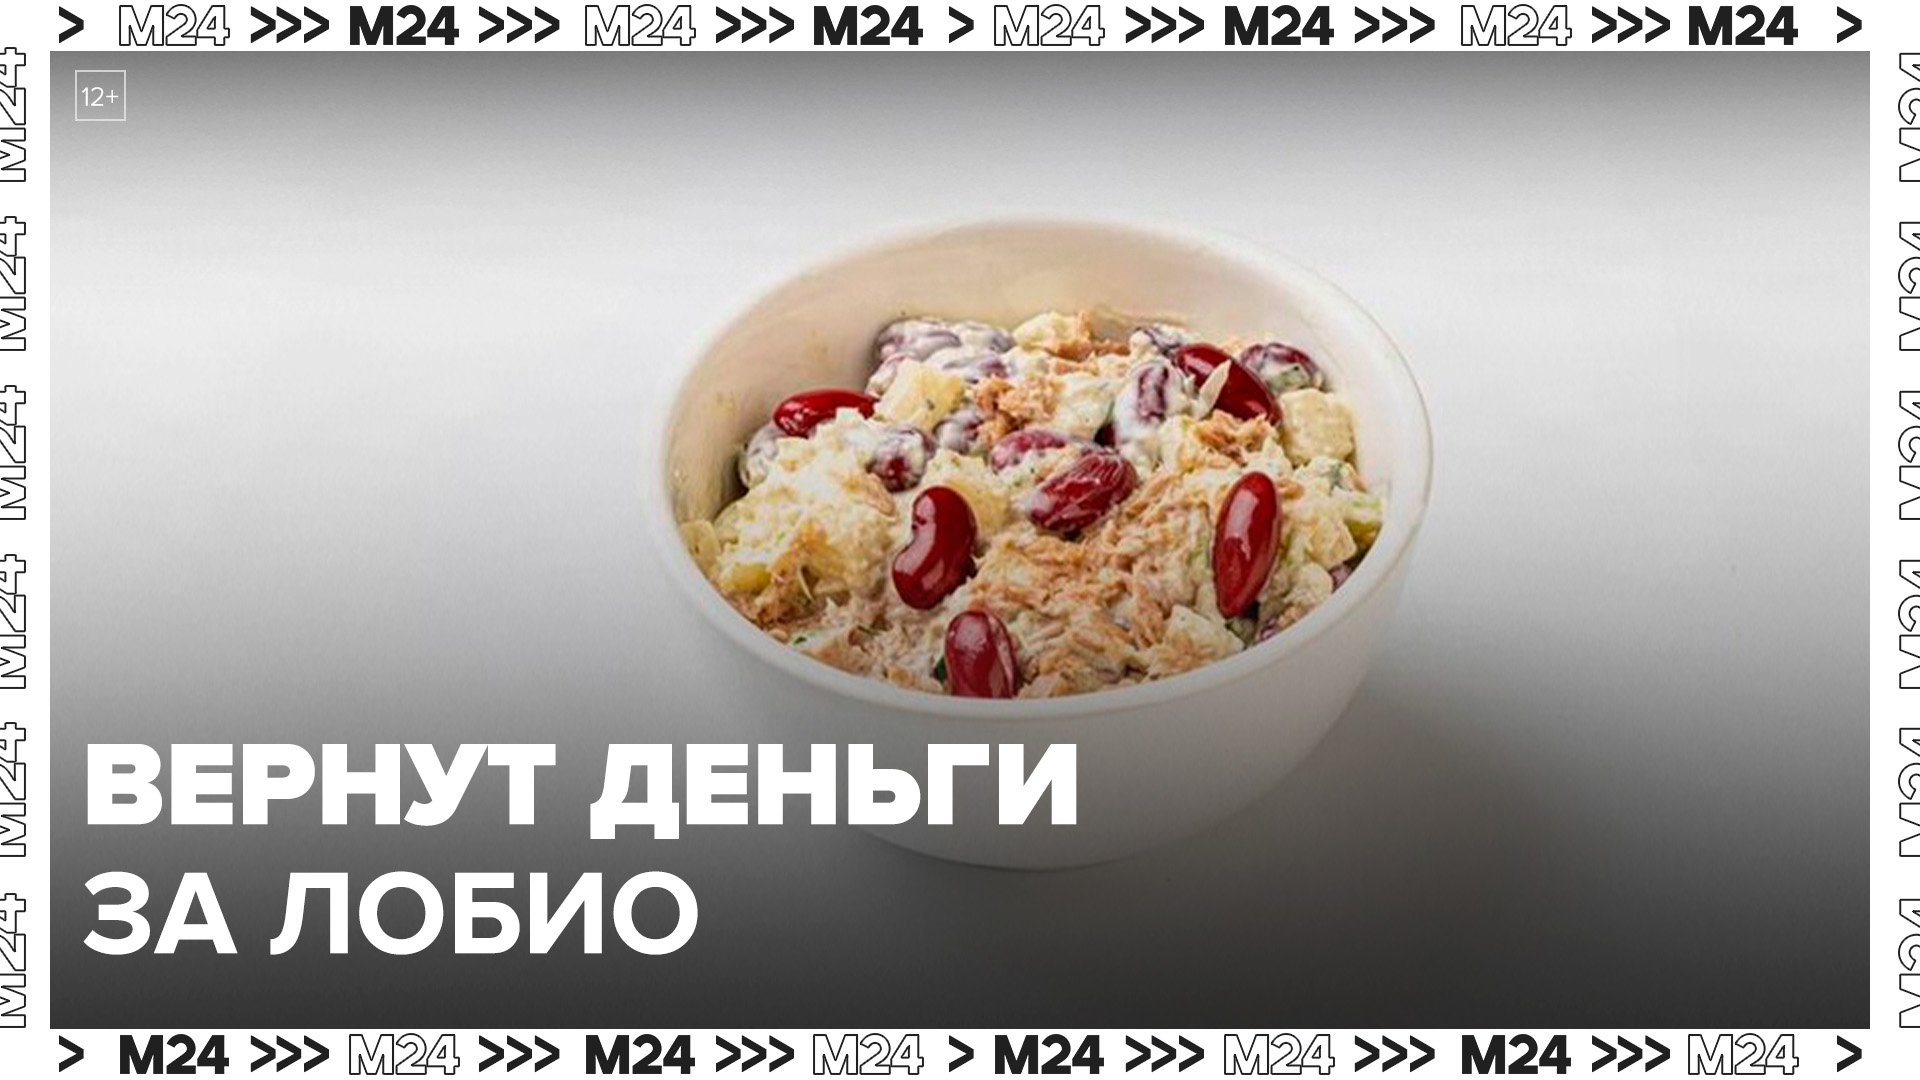 "Самокат" вернет деньги москвичам, купившим салат "Лобио с фасолью" после 10 июня - Москва 24